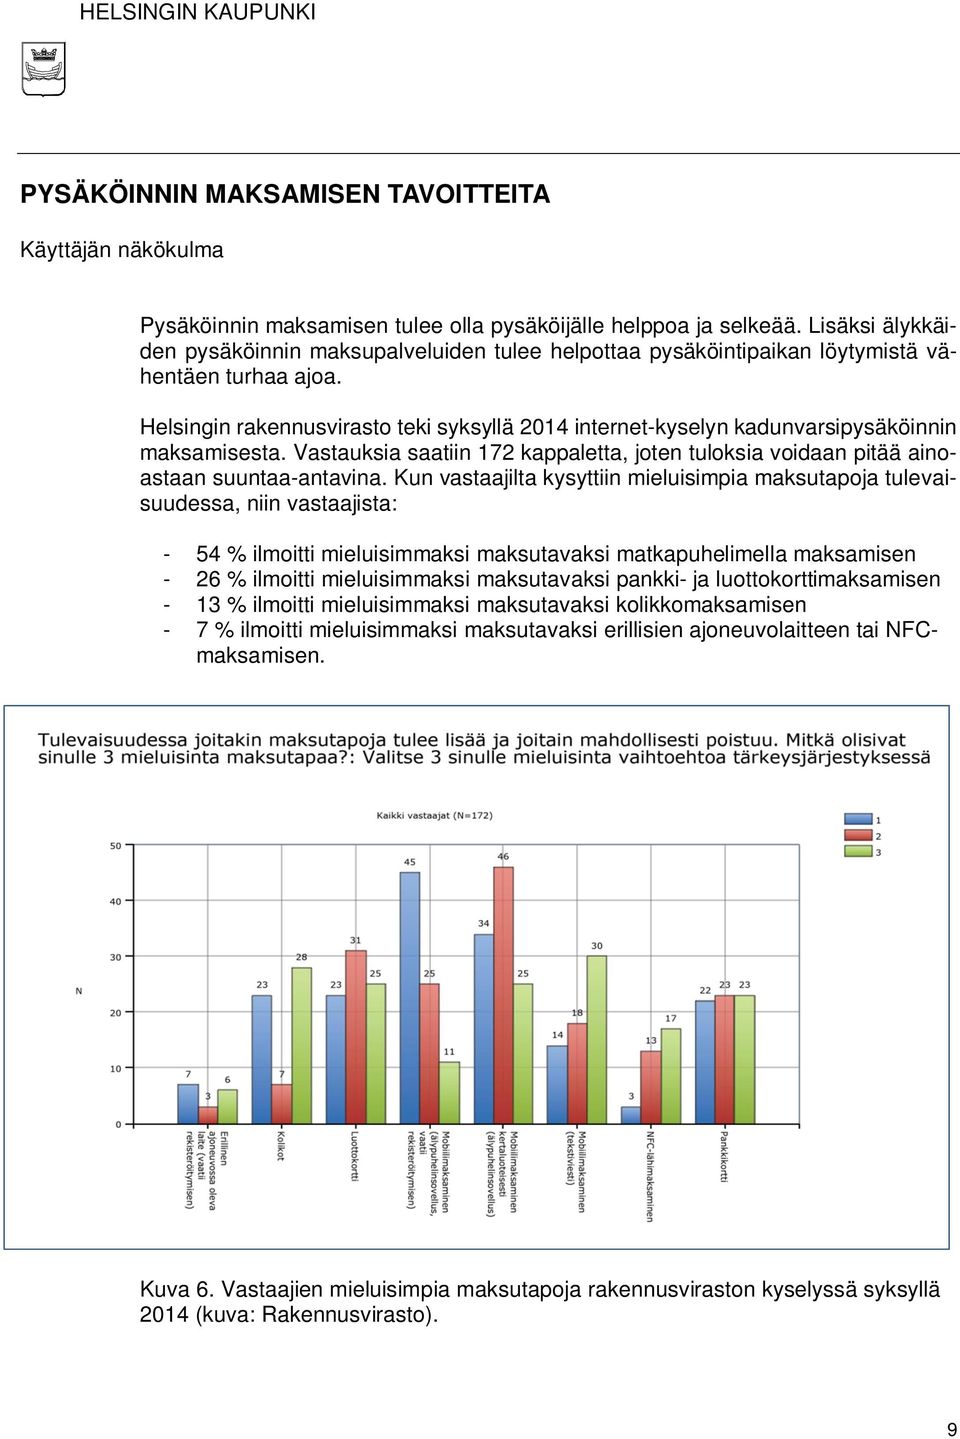 Helsingin rakennusvirasto teki syksyllä 2014 internet-kyselyn kadunvarsipysäköinnin maksamisesta. Vastauksia saatiin 172 kappaletta, joten tuloksia voidaan pitää ainoastaan suuntaa-antavina.